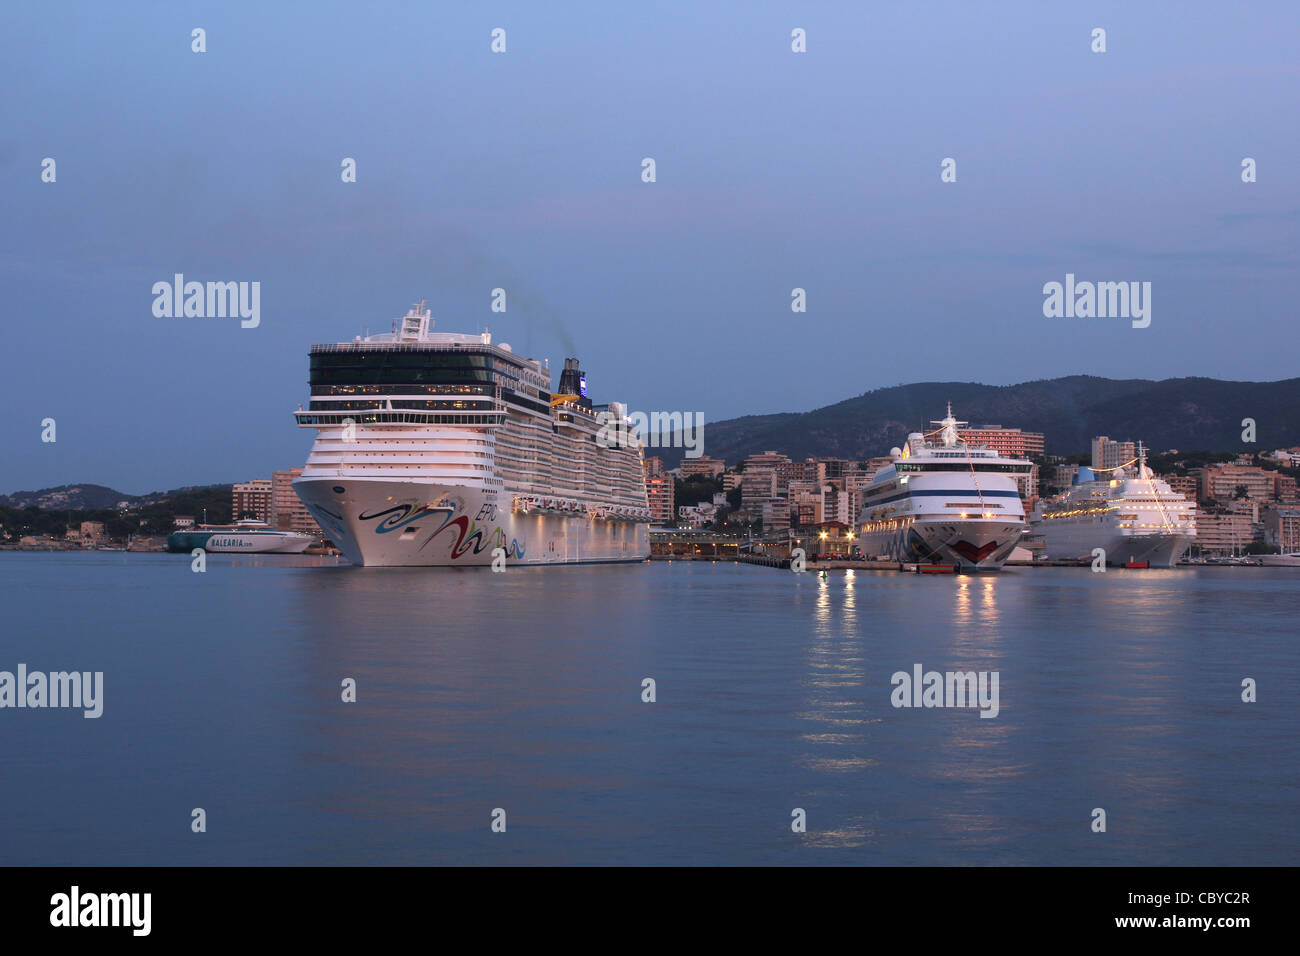 "De croisière Norwegian Epic' avec les navires de croisière 'Aidavita' et 'Thomson Dream' dans le port de Palma de Majorque Banque D'Images